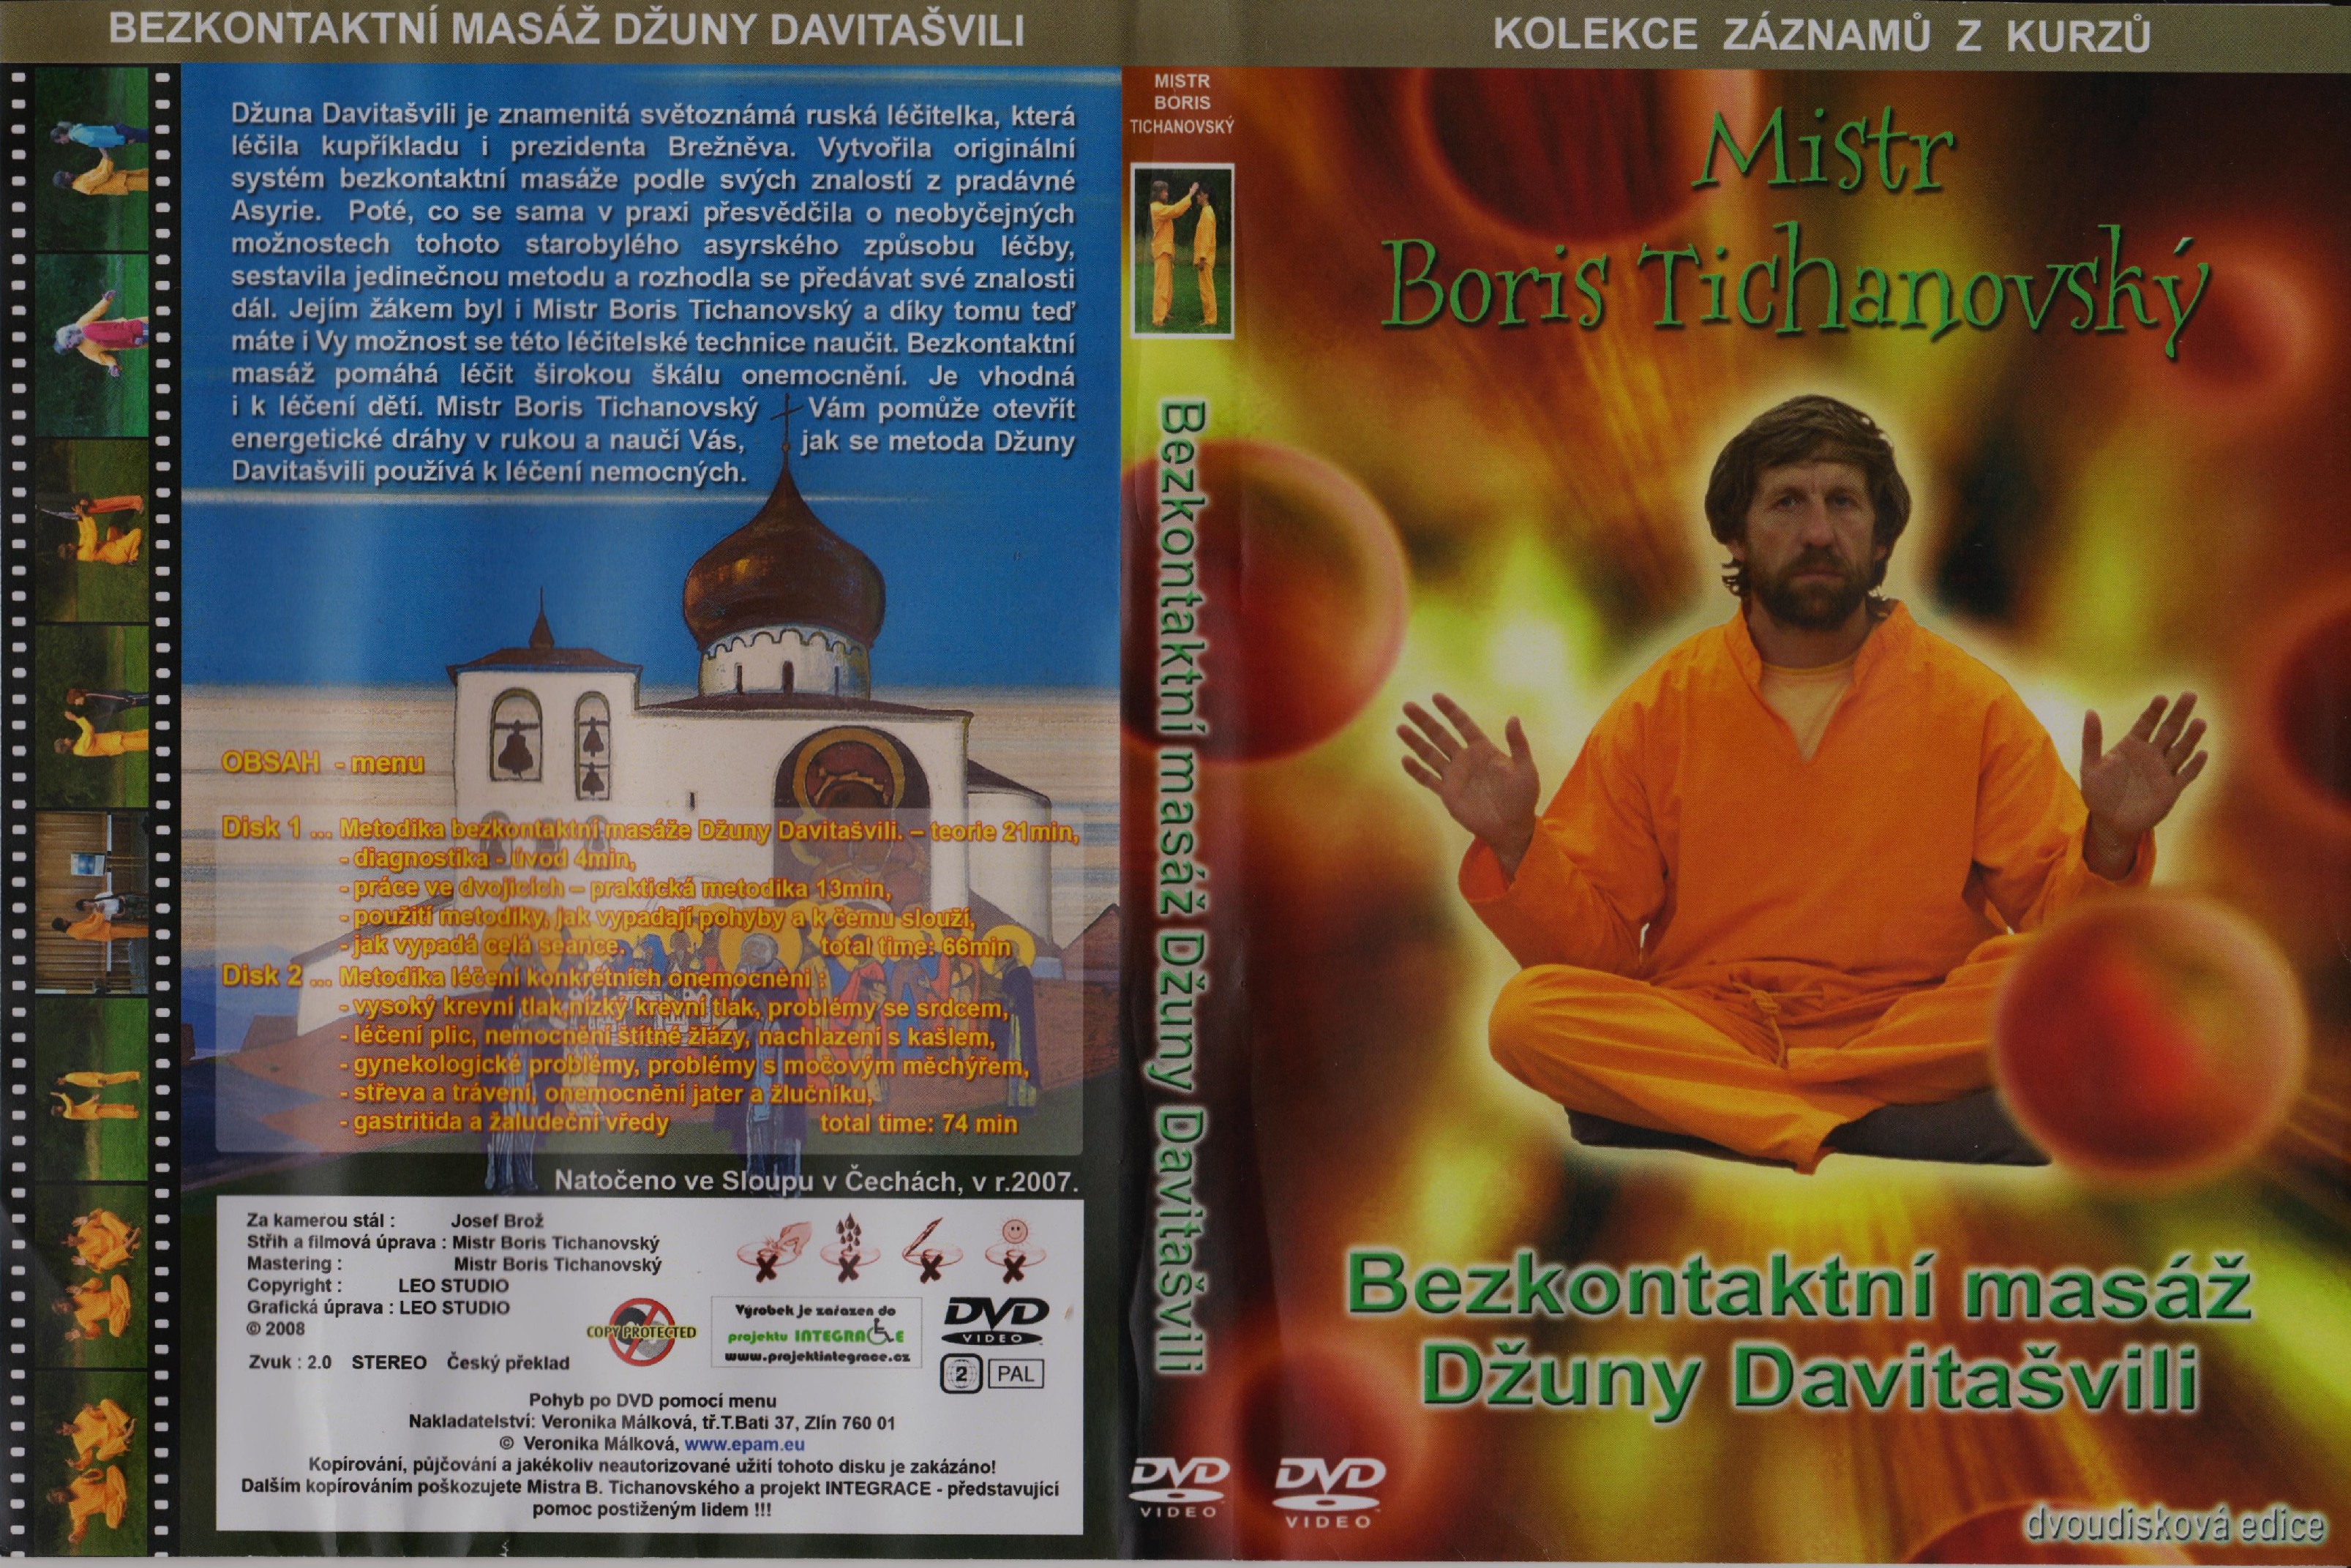 DVD Bezkontaktní masáž Džuny Davitašvili